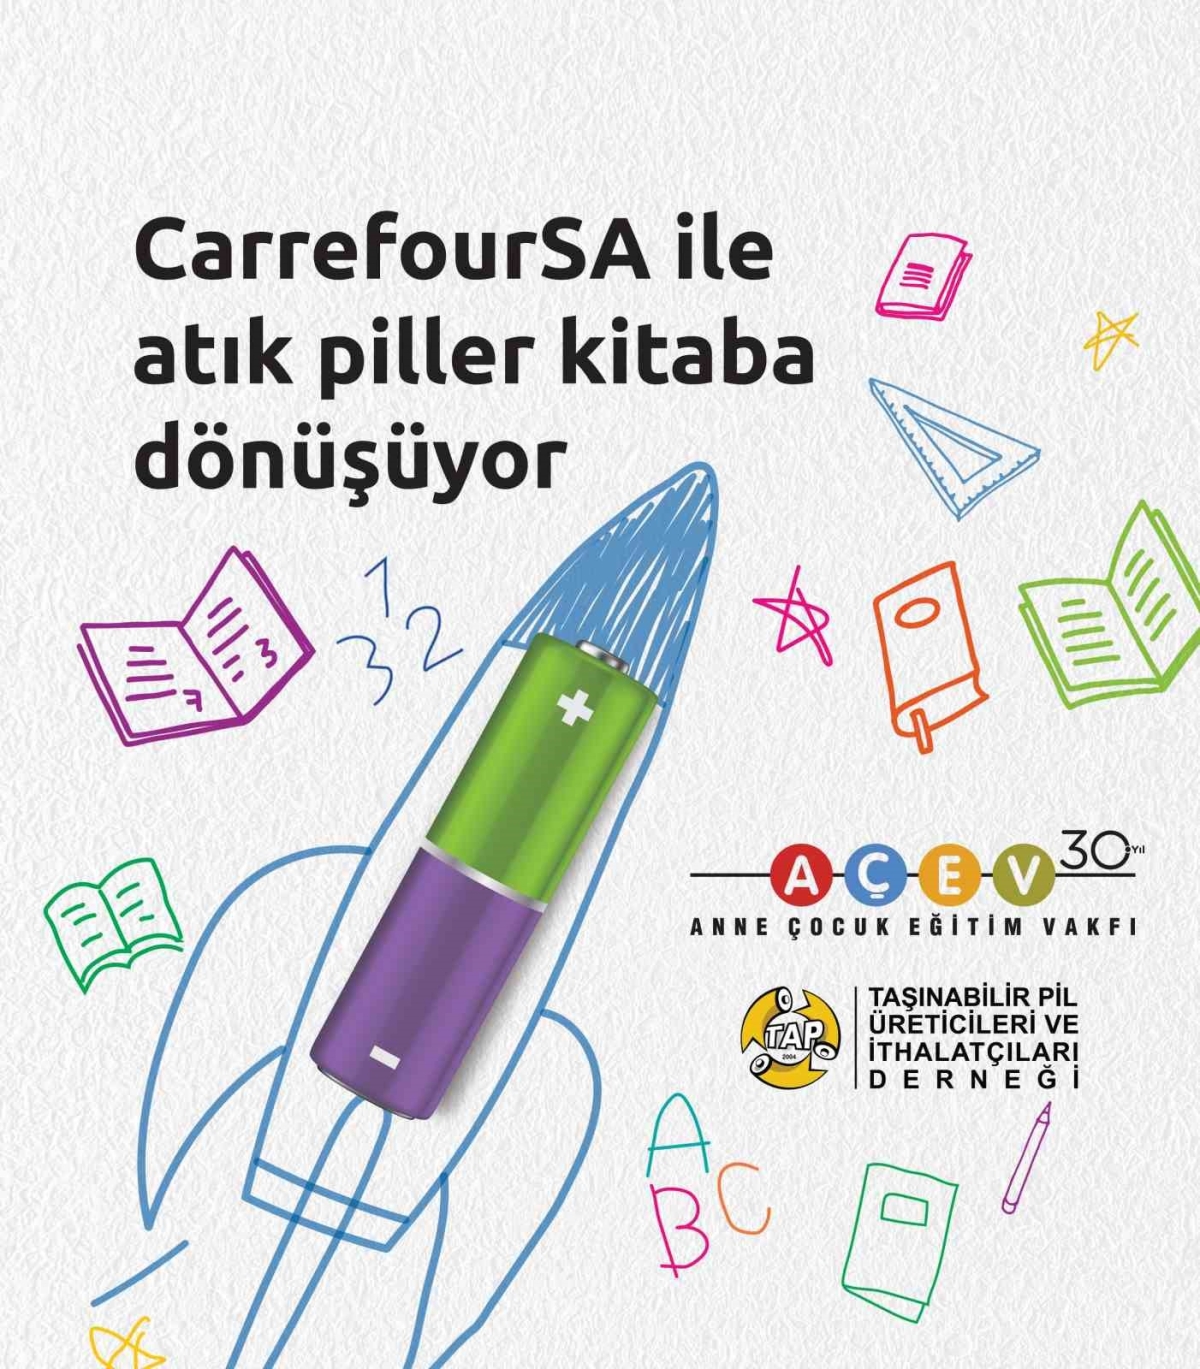 CarrefourSA’da atık piller AÇEV iş birliği ile çocuklar için kitaba dönüşüyor
